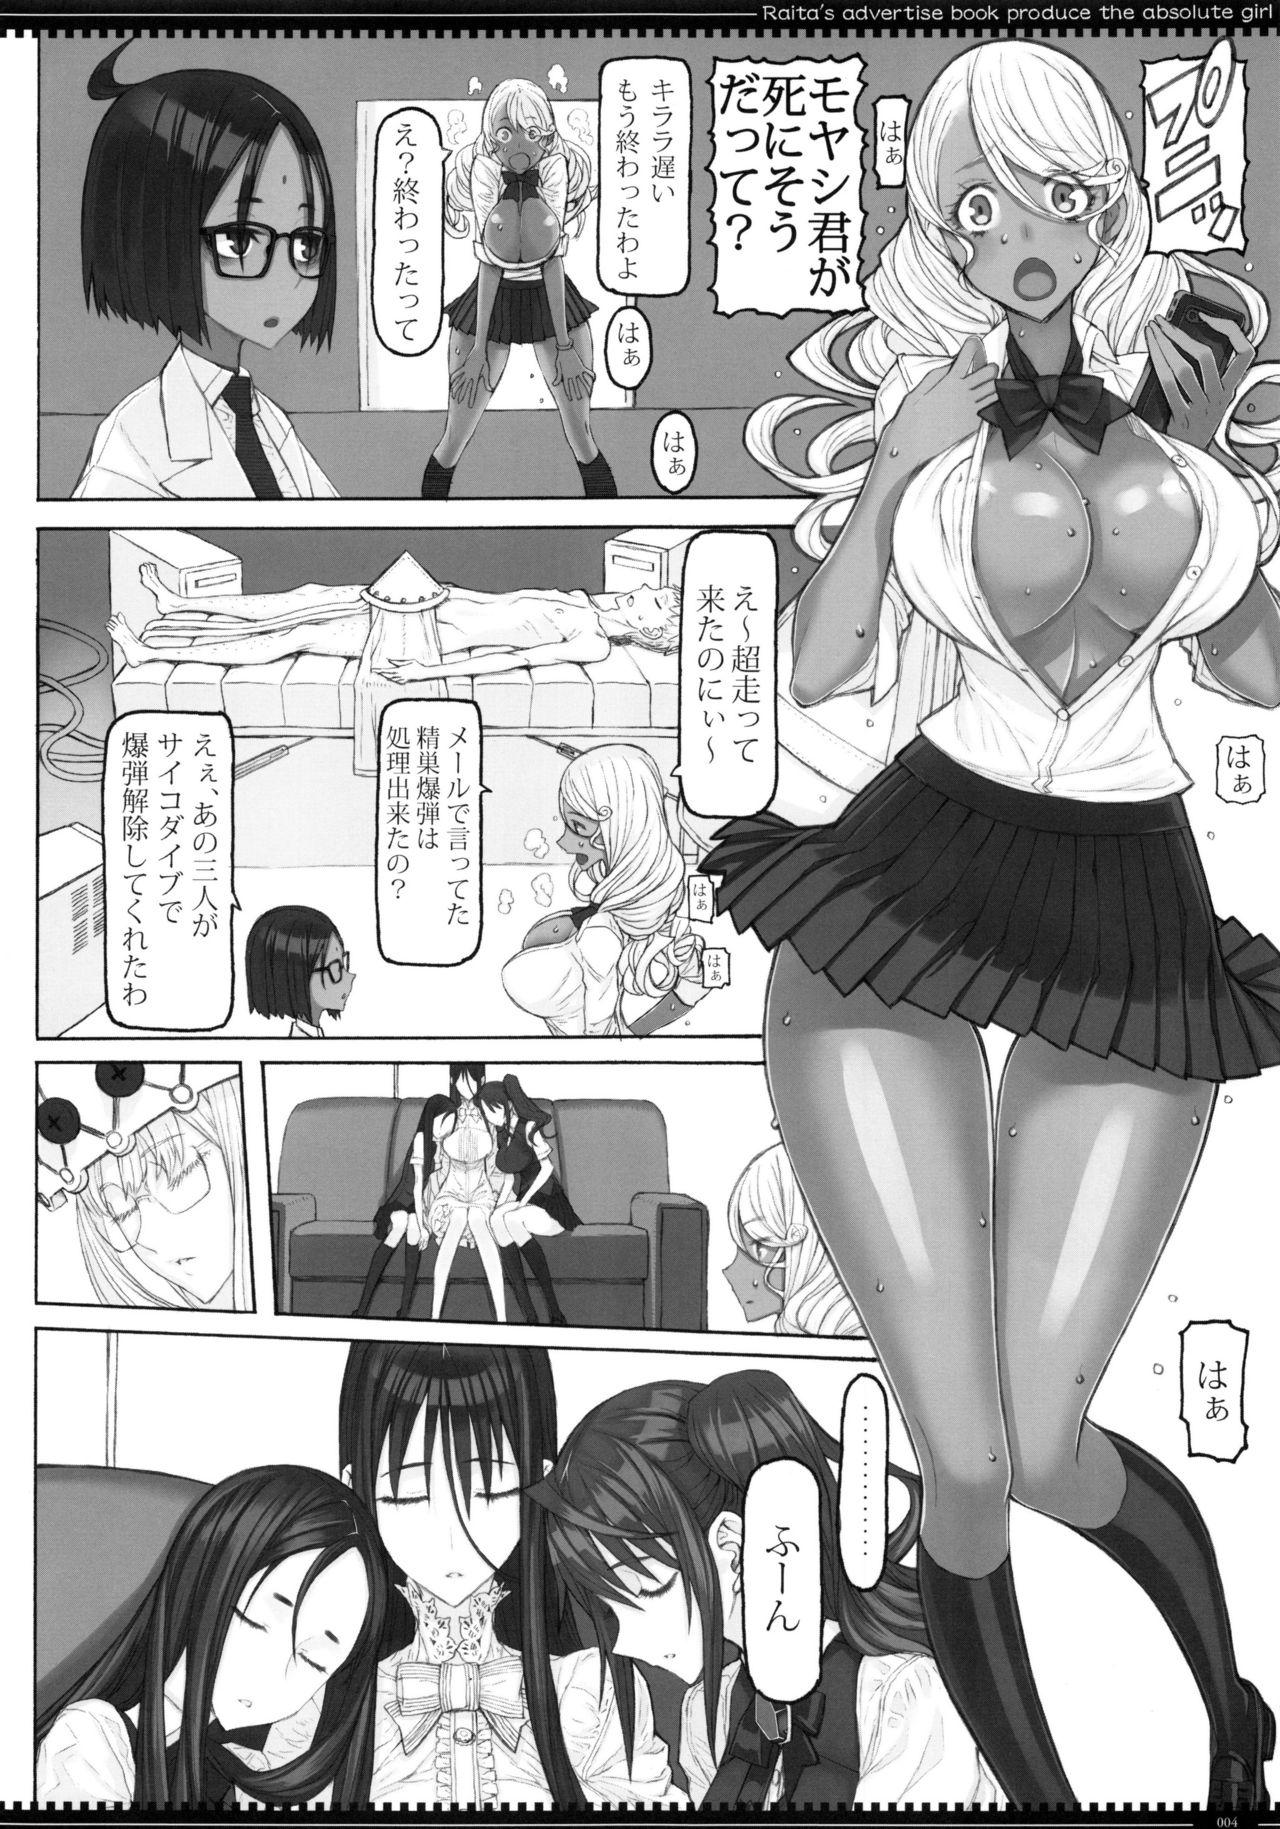 3some Mahou Shoujo 19.0 - Zettai junpaku mahou shoujo Amateurs - Page 3